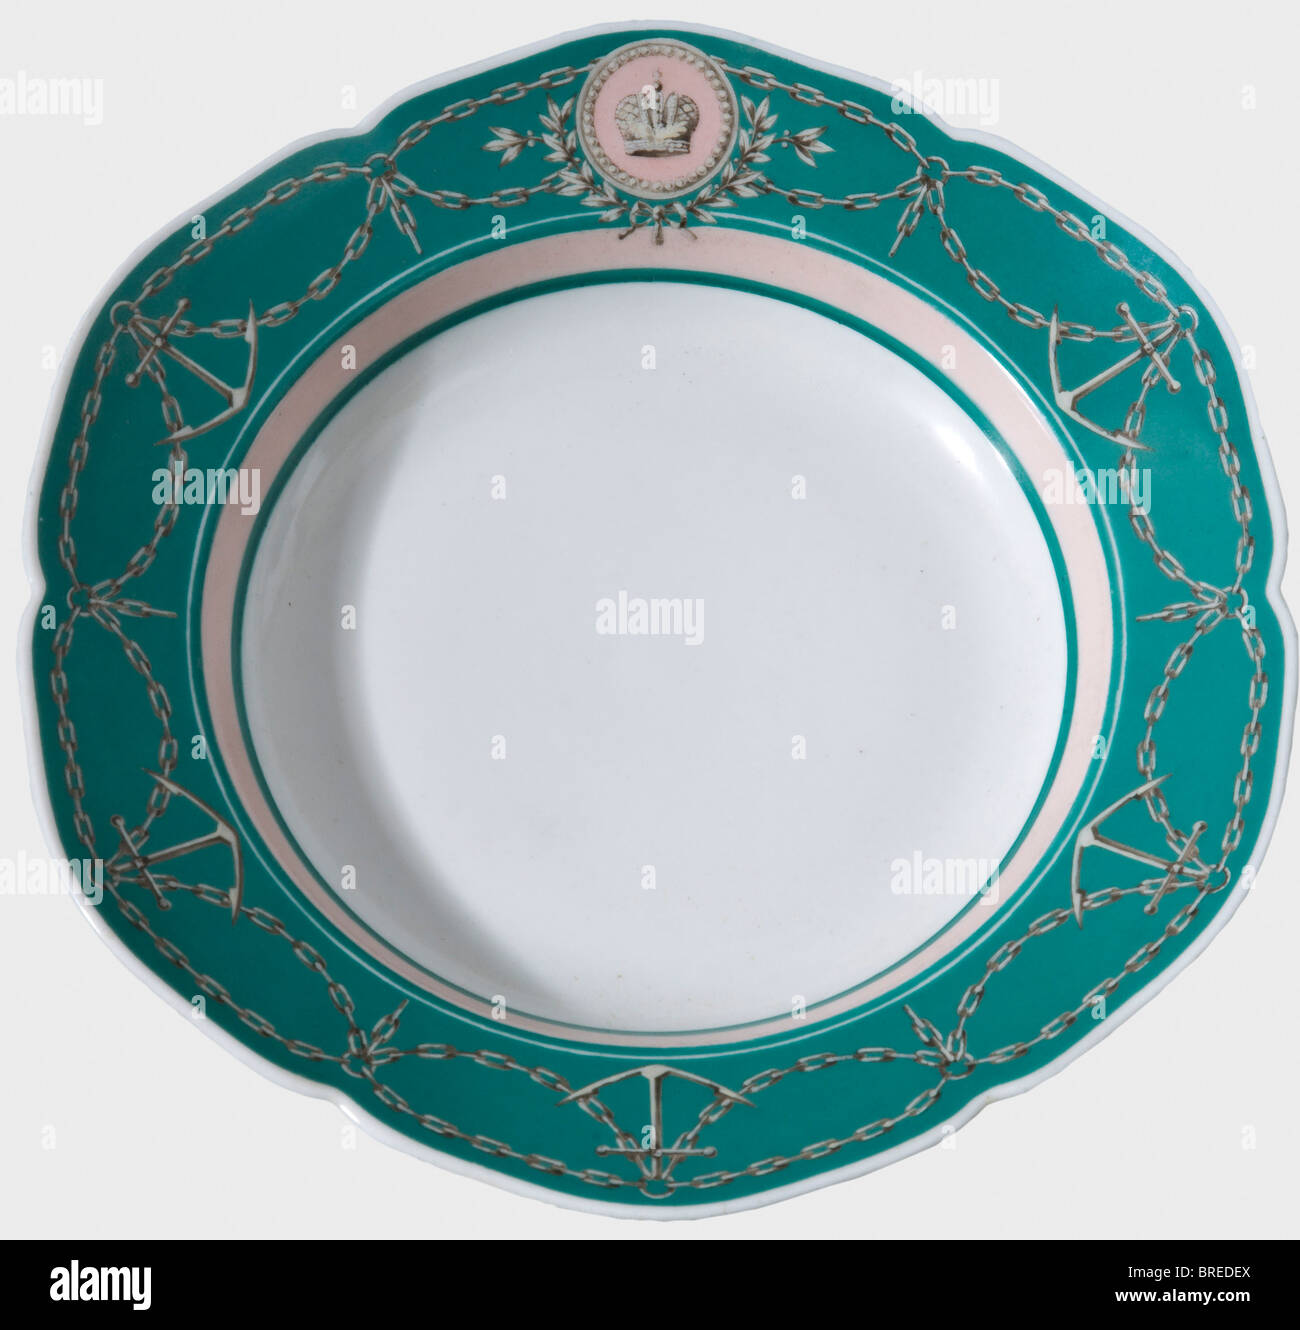 Un plato de sopa del servicio de yates del Zar Alexander II, fábrica de  porcelana imperial rusa de San Petersburgo blanca, porcelana vidriada, con  decoración pintada a mano en color verde y